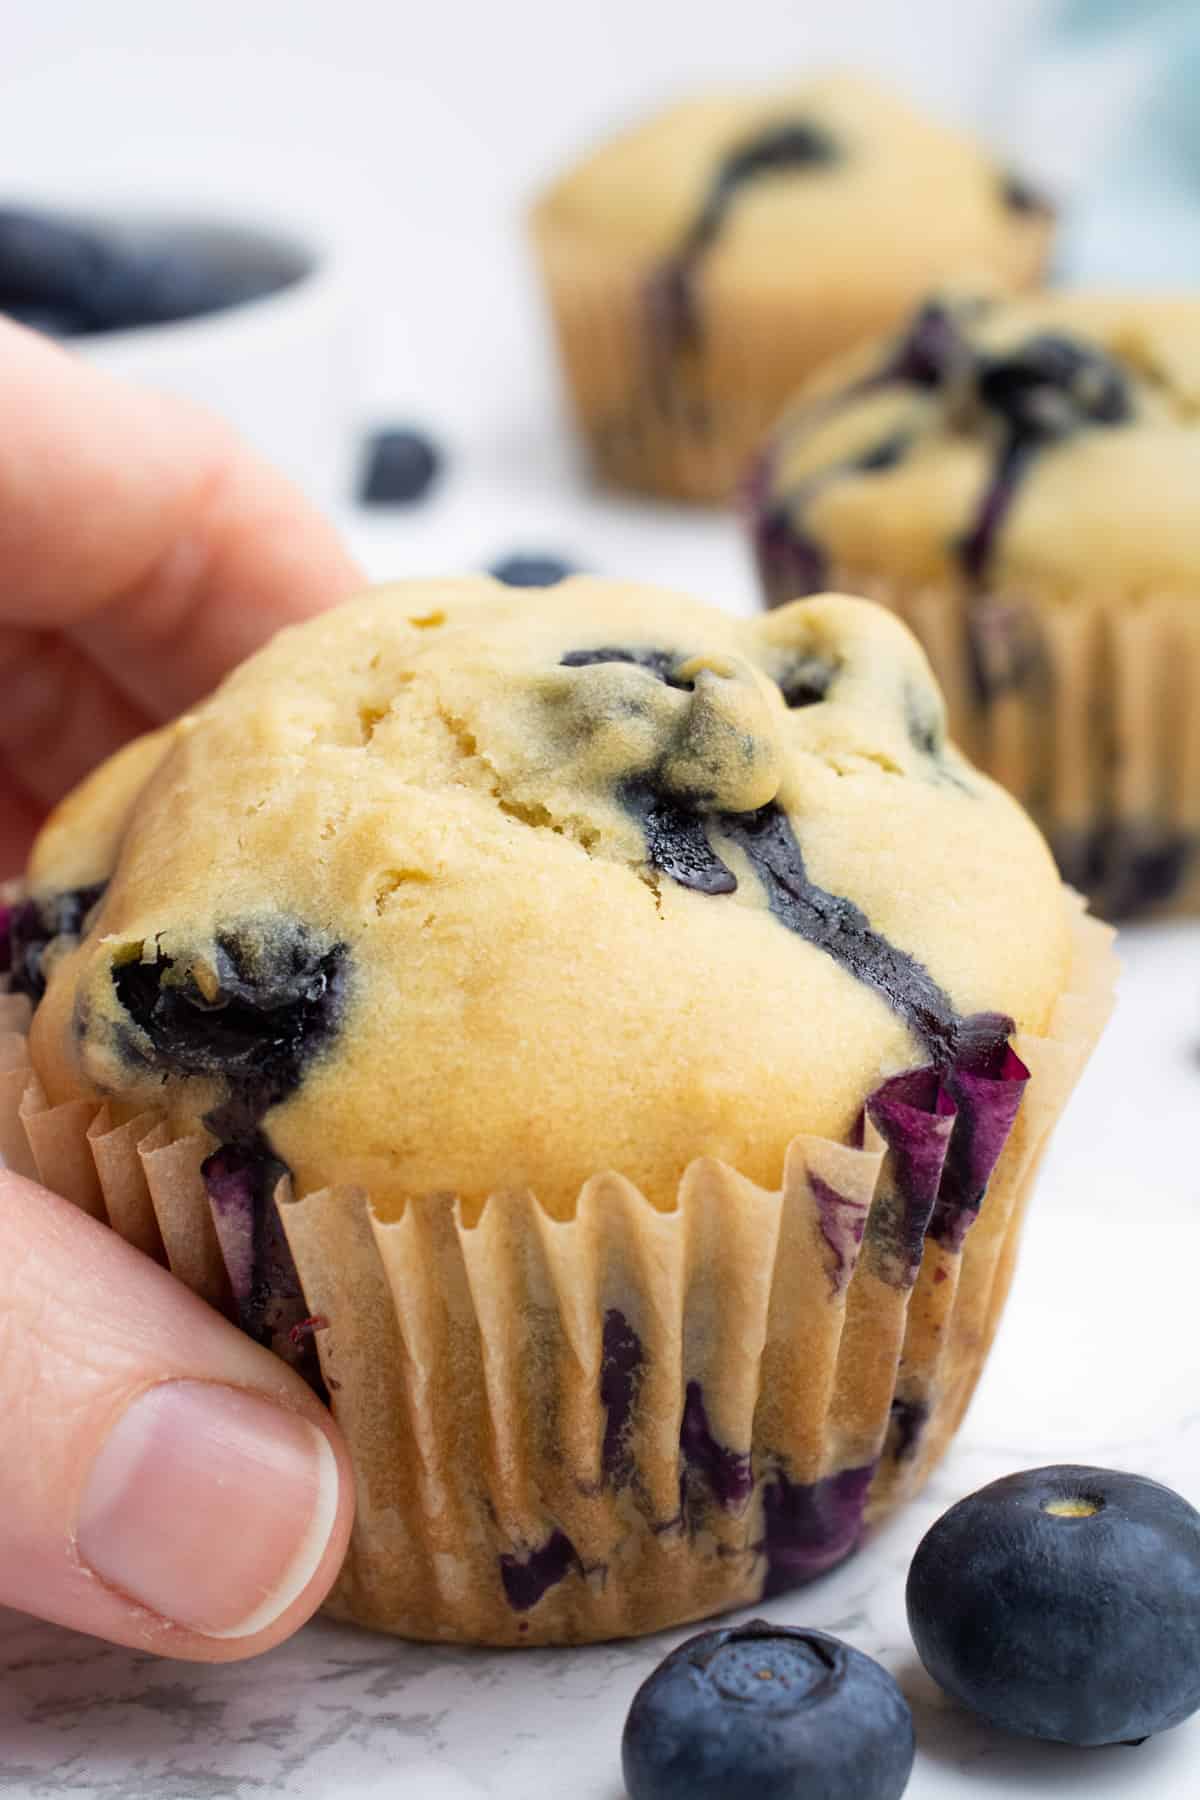 A hand grabbing a vegan blueberry muffin.